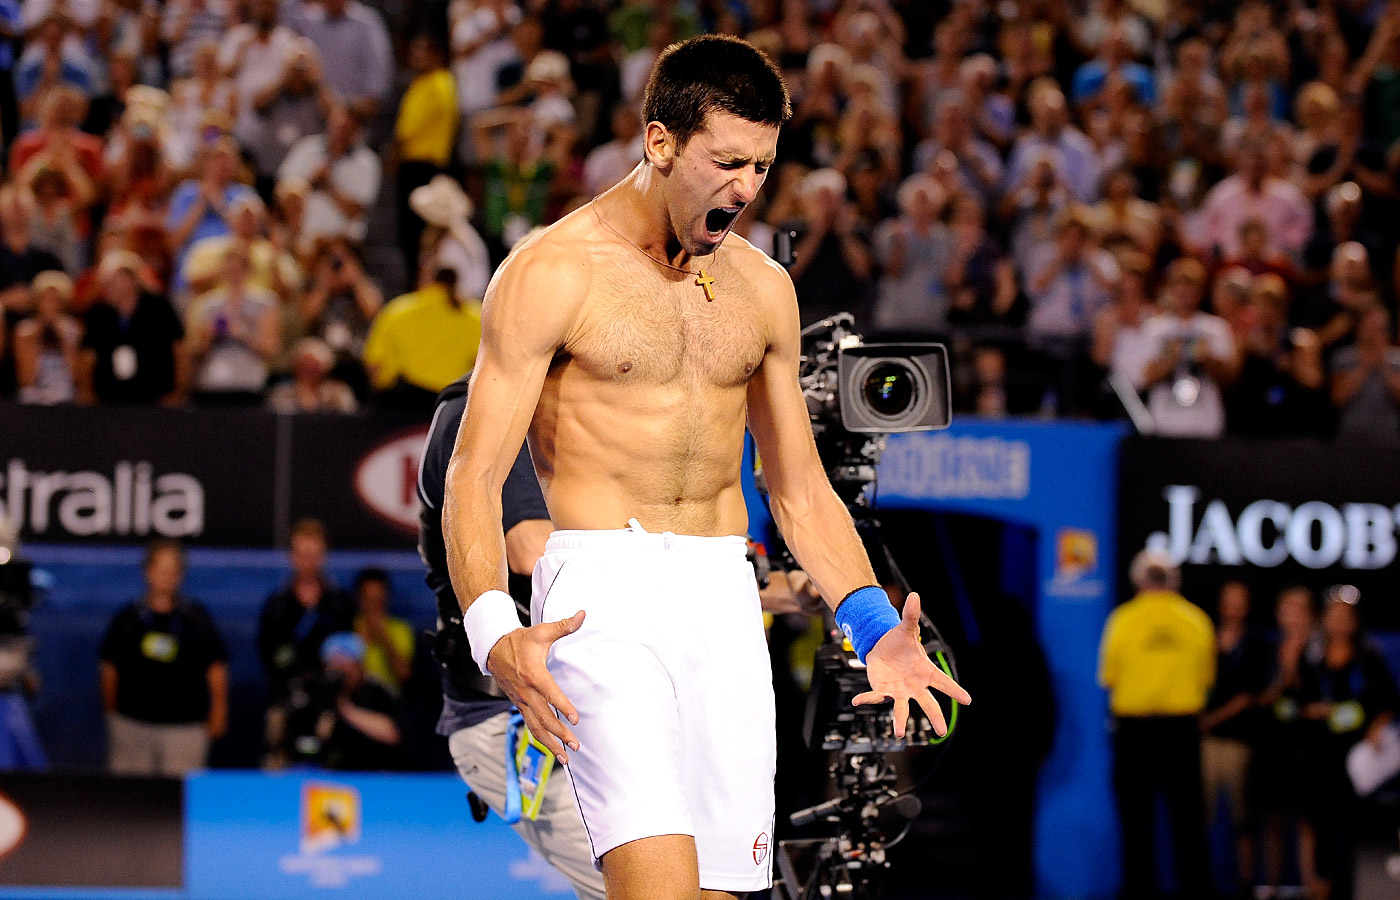 Novak Djokovic's Australian Open 2012 victory pictures...